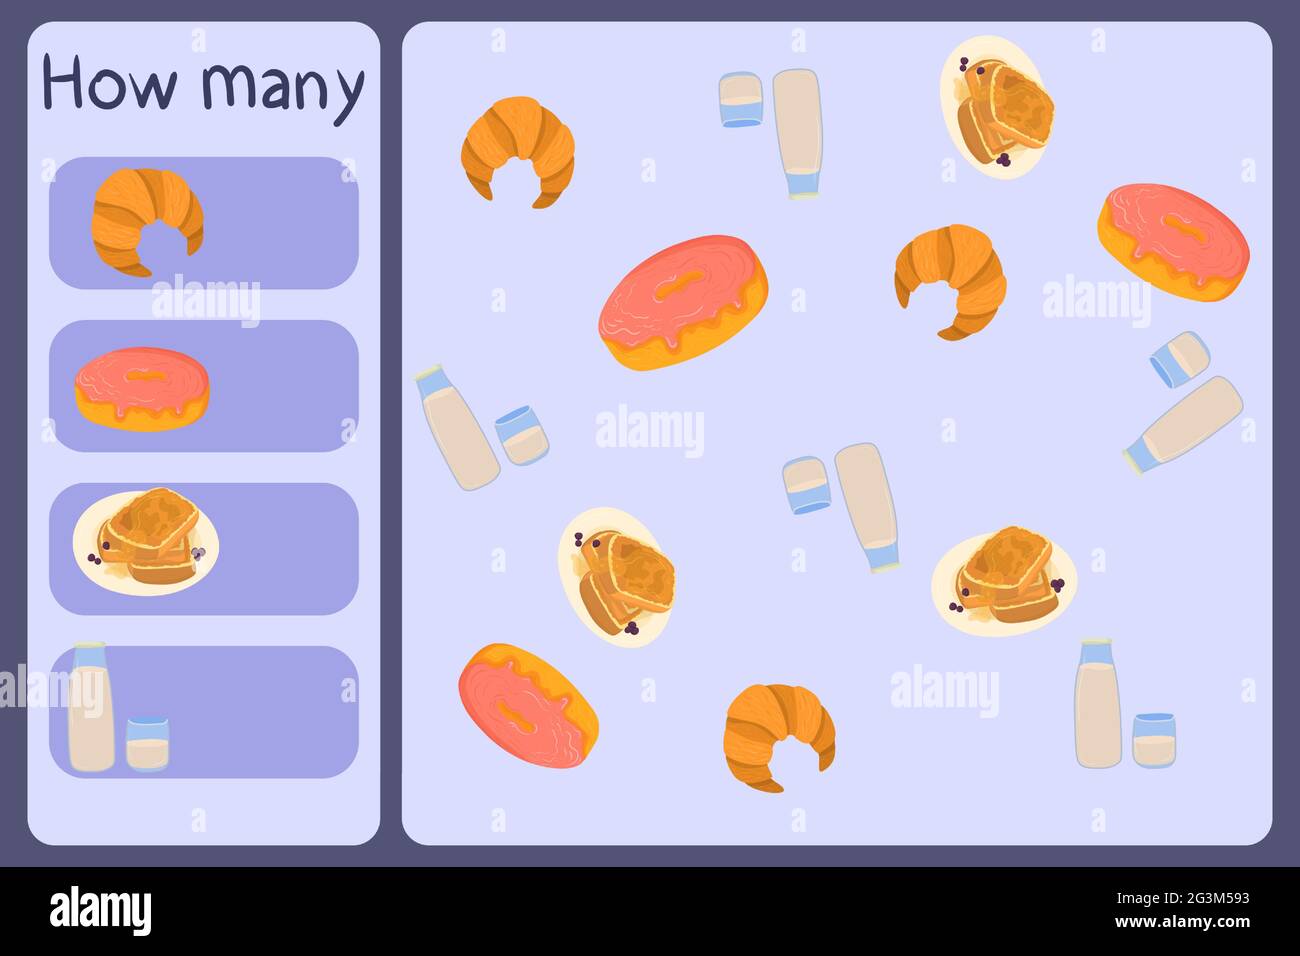 Kids mathematische Mini-Spiel - zählen, wie viele Lebensmittel - Croissant, Donut, Toast, Milch. Pädagogische Spiele für Kinder. Cartoon Design Vorlage auf bunten Hintergrund. Vektorgrafik. Stock Vektor